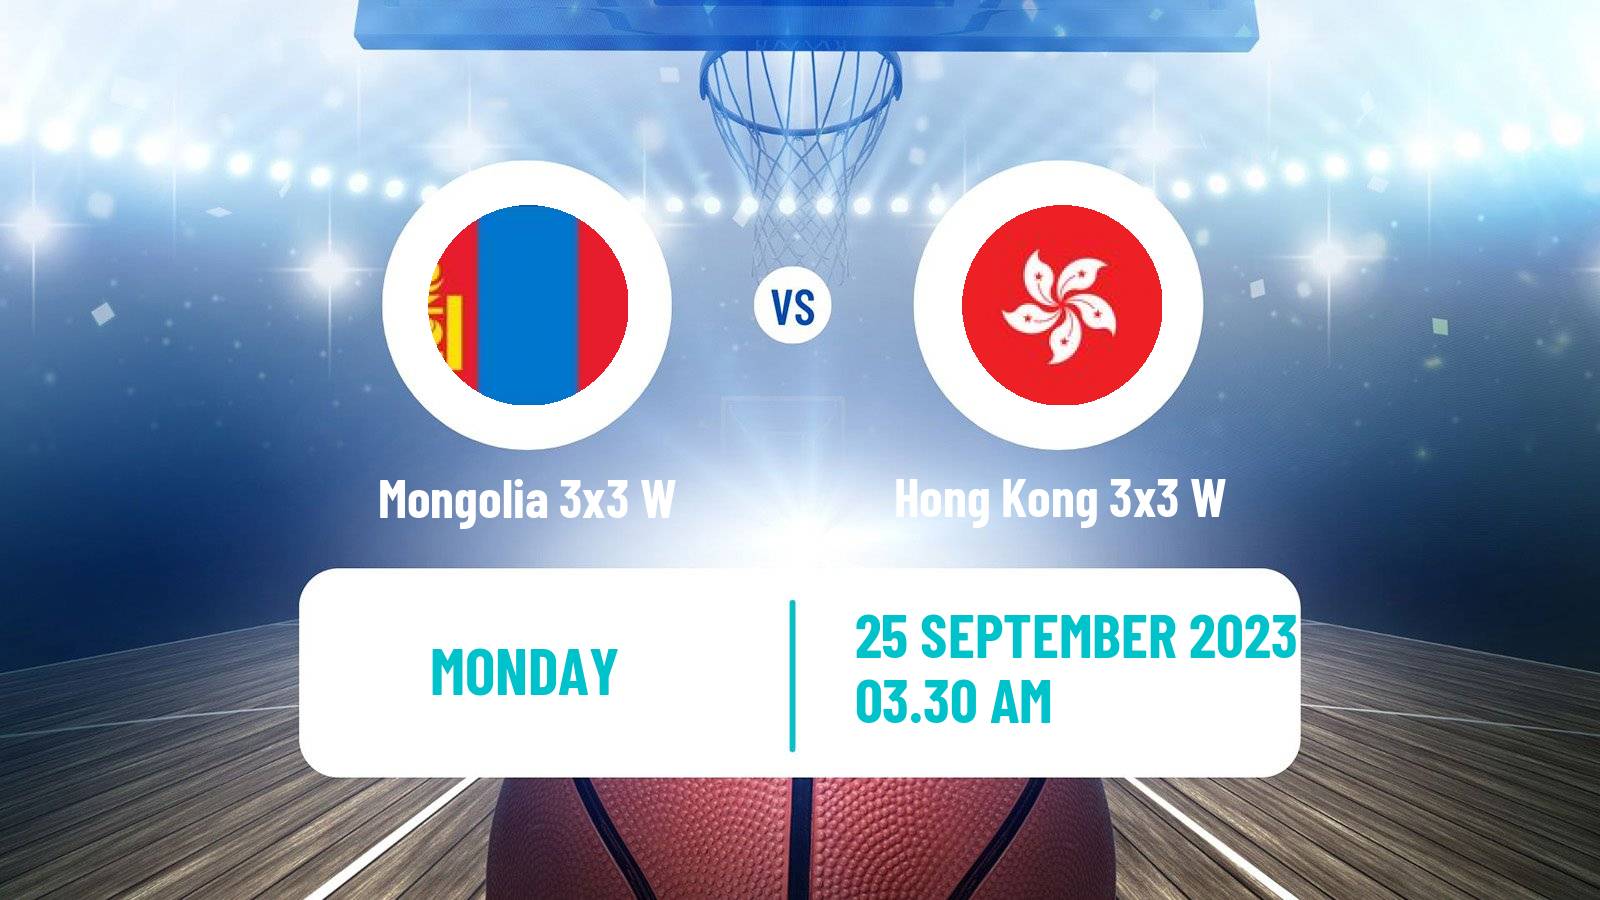 Basketball Asian Games Basketball 3x3 Women Mongolia 3x3 W - Hong Kong 3x3 W